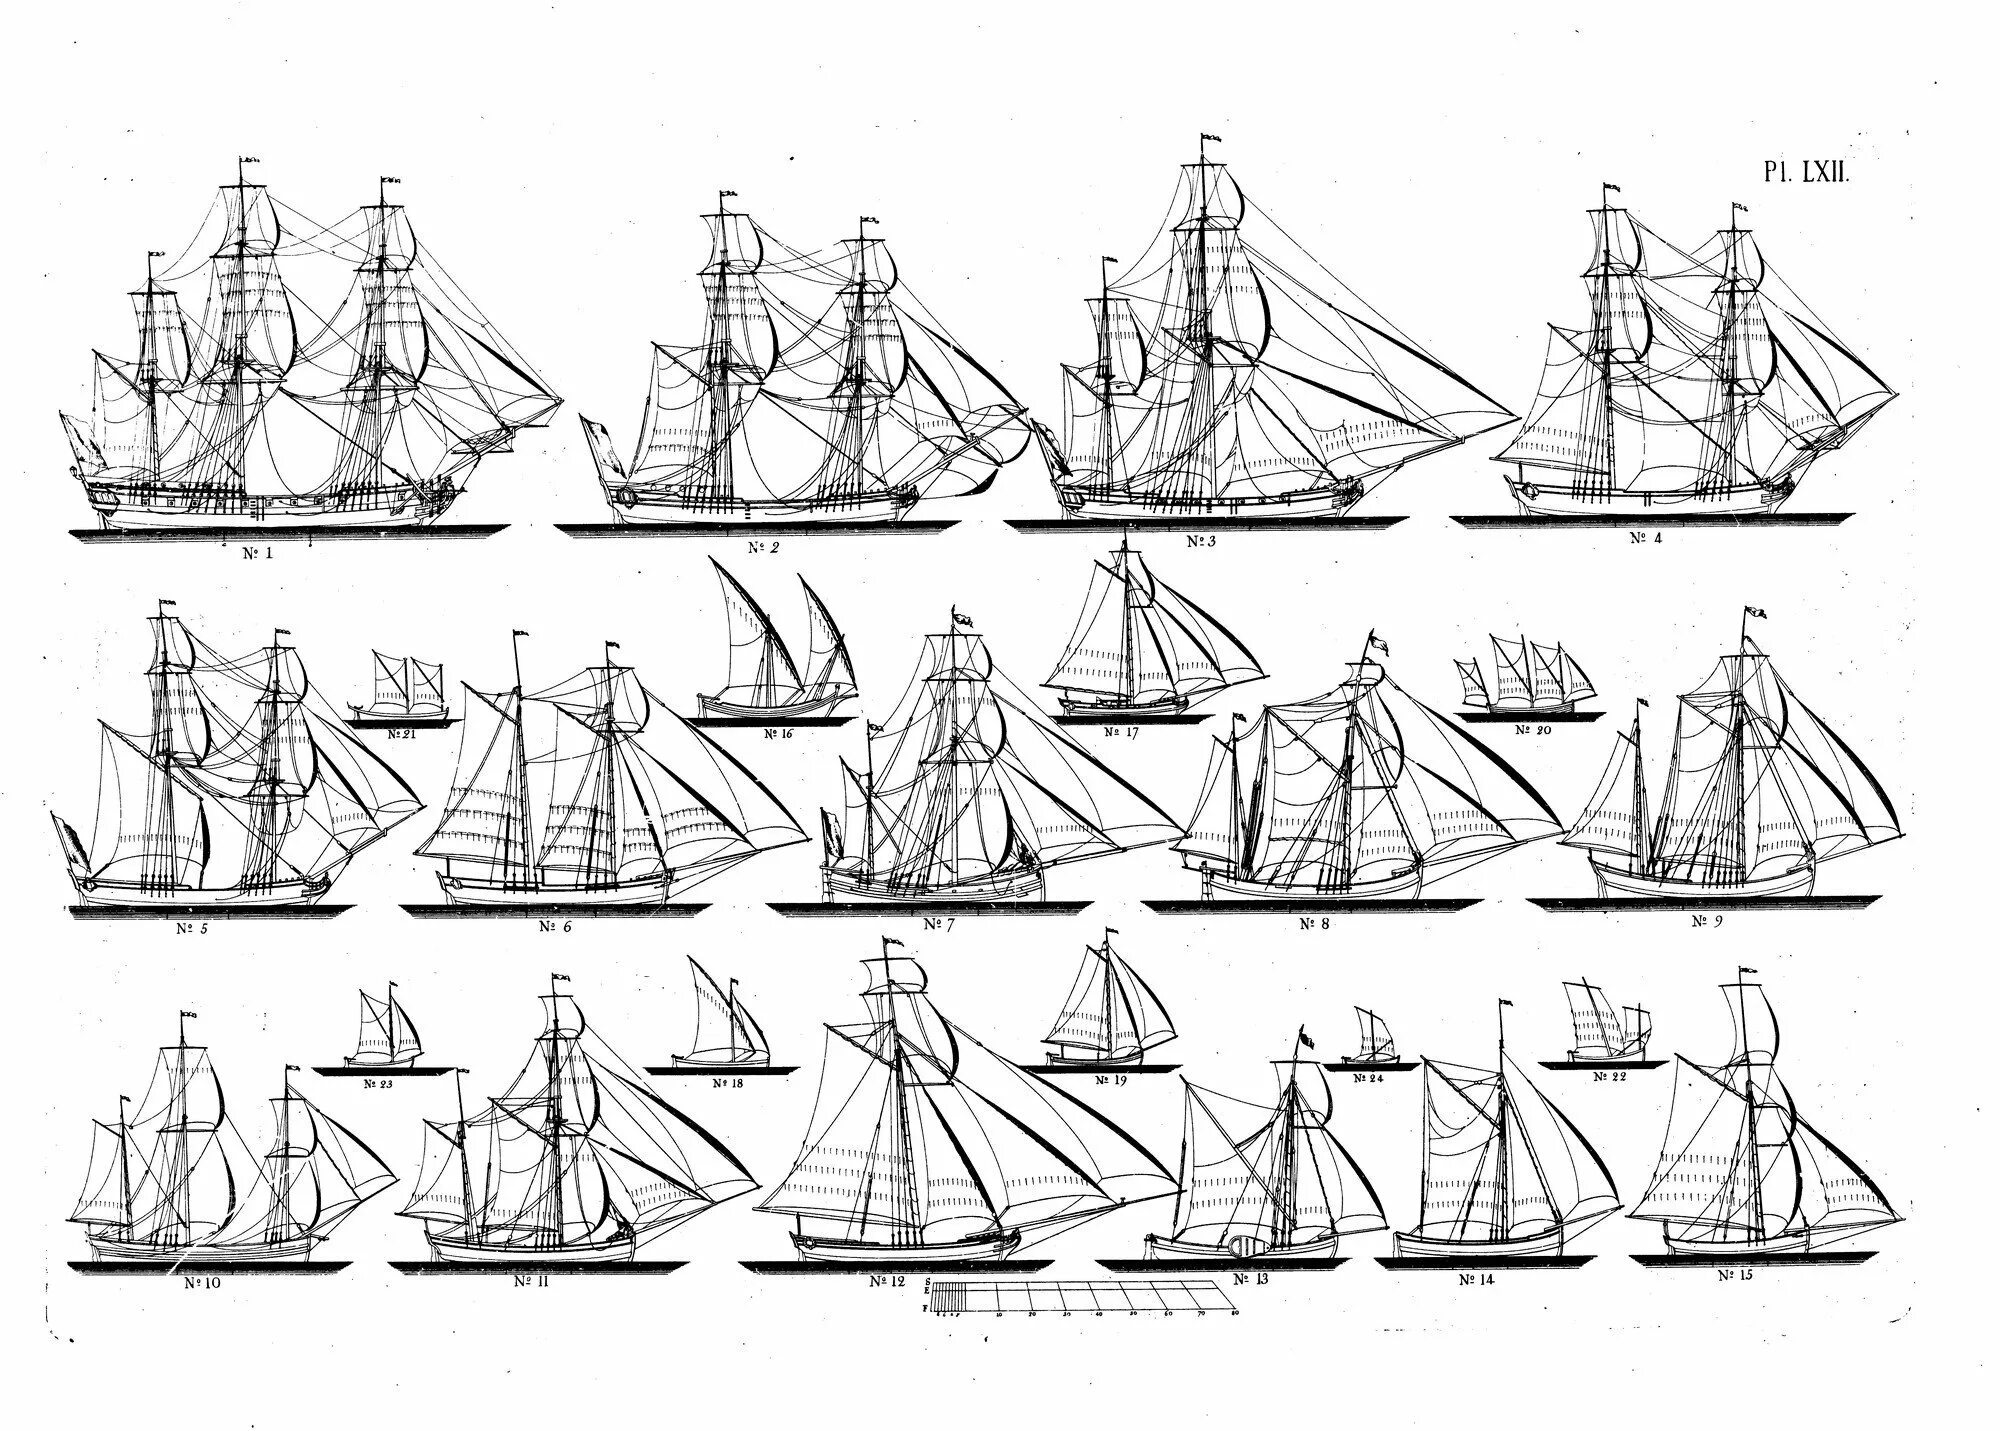 Тип парусного судна. Классификация парусных кораблей 18 века. Классификация парусных кораблей 17 века. Классификация кораблей 17 века. Классификация парусных кораблей 16-18 века.